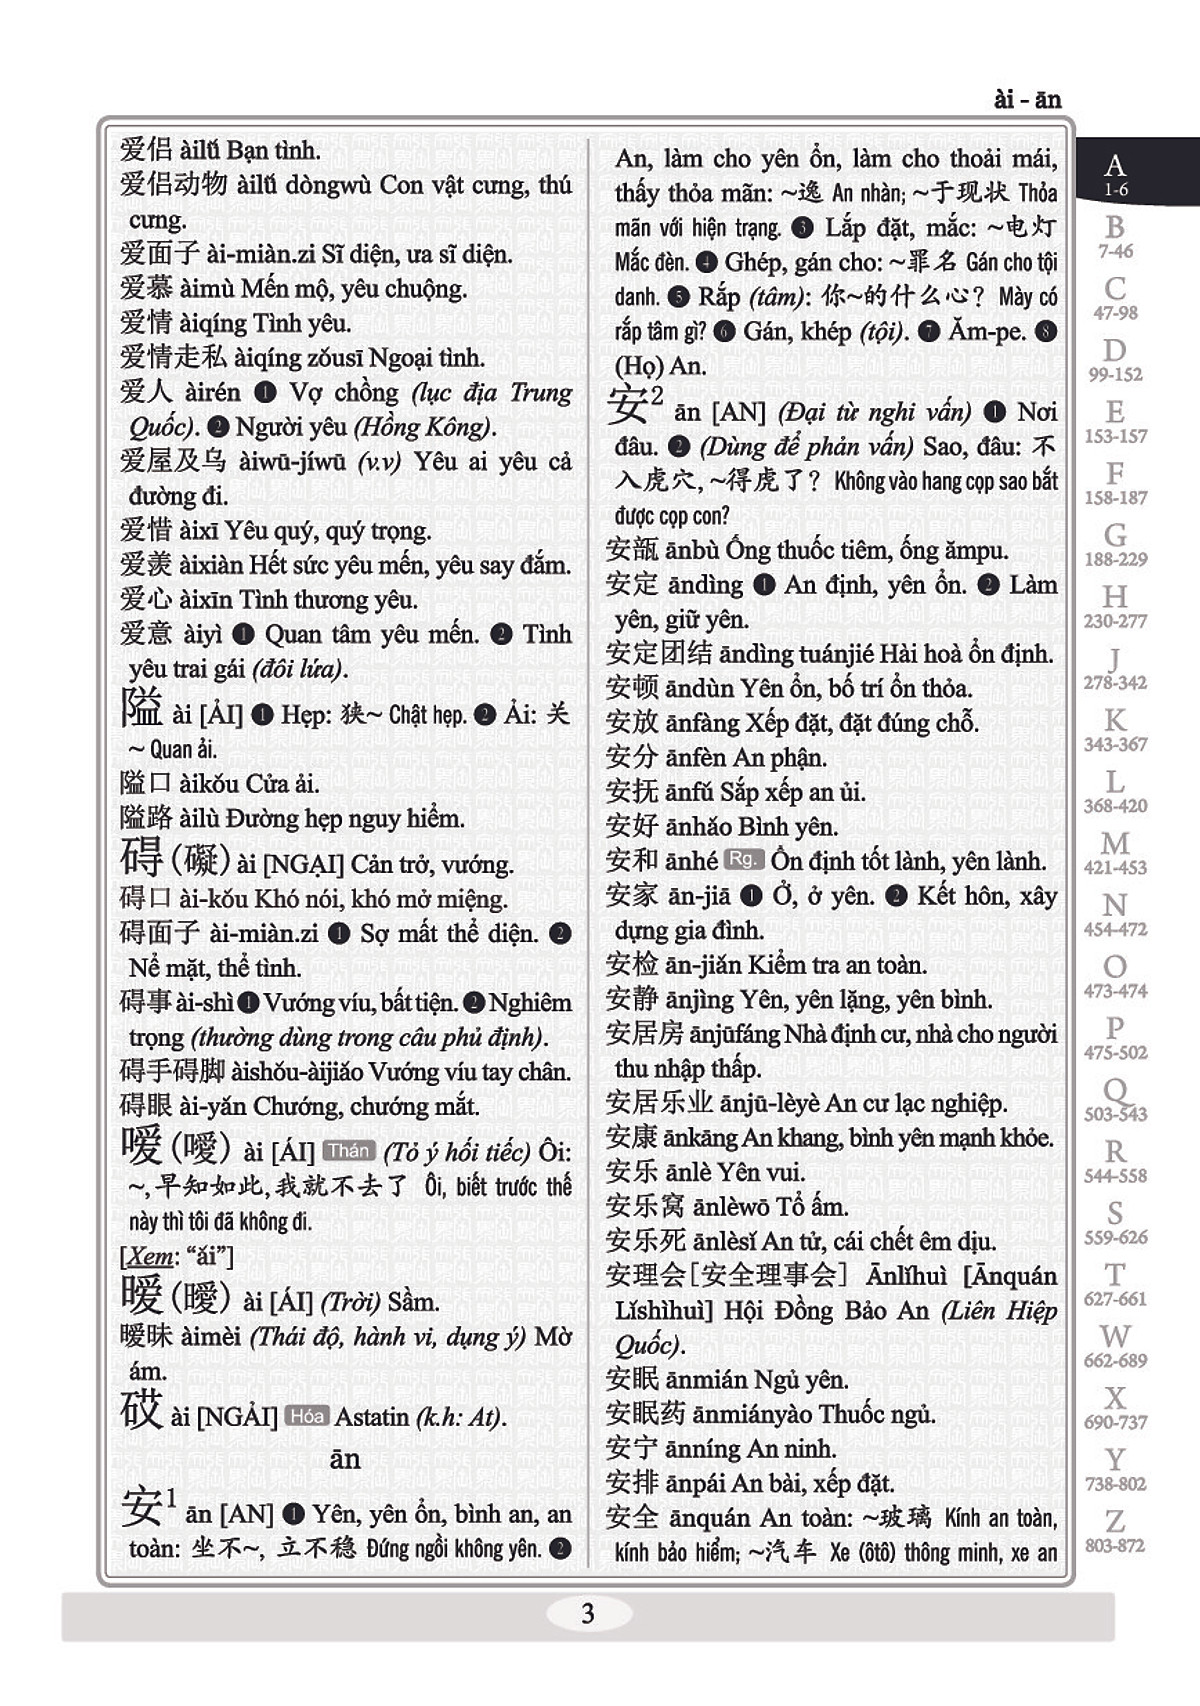 Combo 2 sách Từ điển 2 trong 1 Việt Hán Hán Việt hiện đại 1512 trang bìa cứng khổ lớn ( Hoa Việt 872 trang - Việt Hoa 640 trang)+ 999 bức thư viết cho chính mình song ngữ Trung việt có phiên âm mp3 nghe +DVD tài liệu